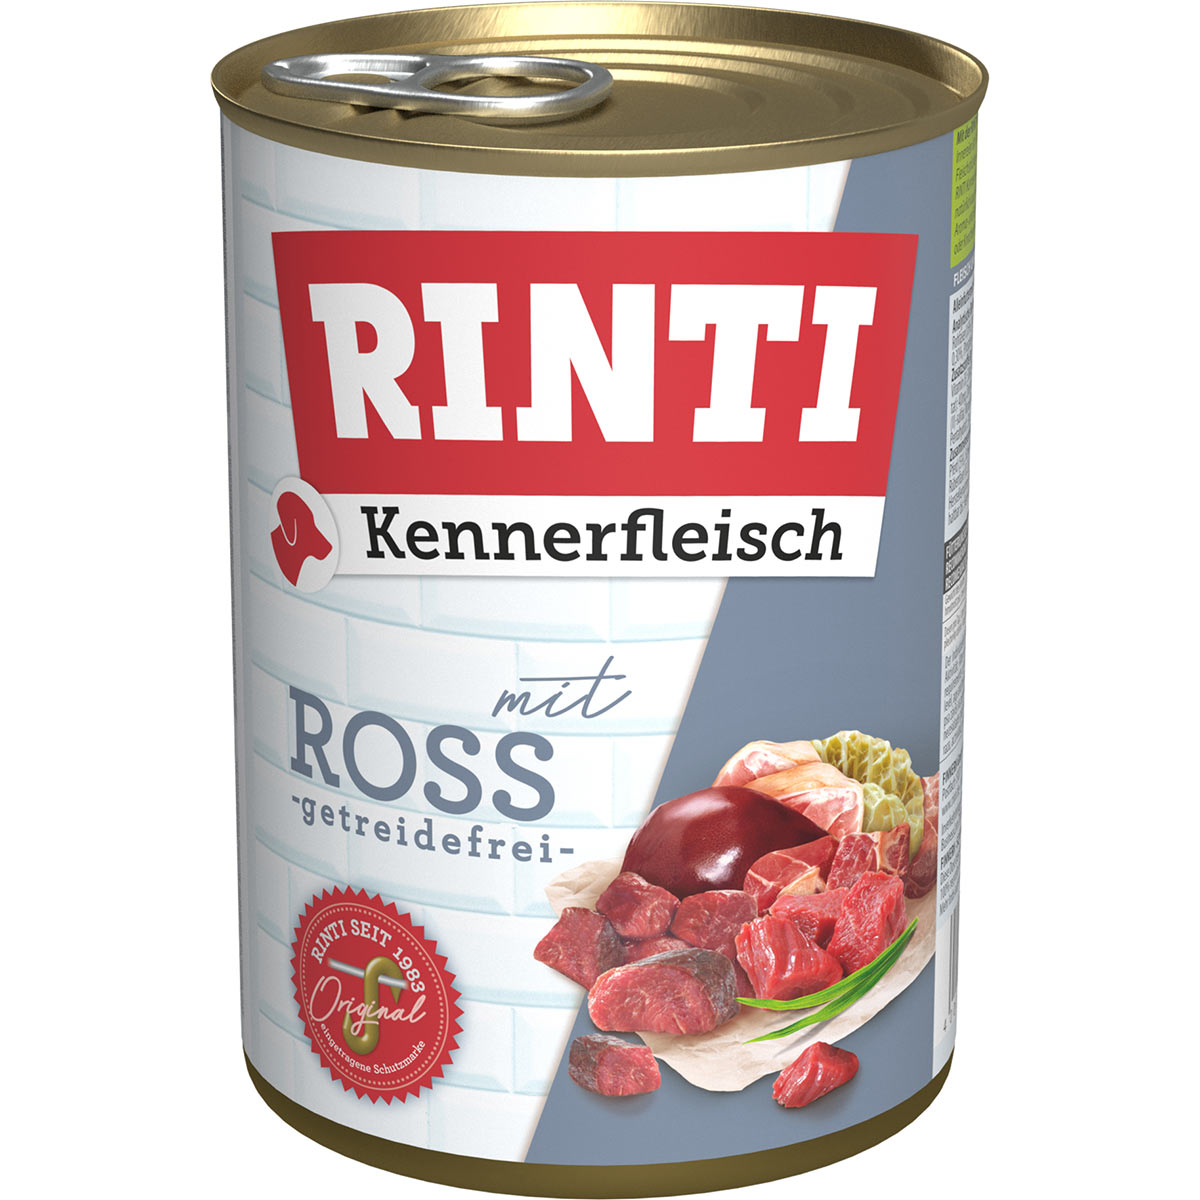 Rinti Kennerfleisch mit Ross 24x400g